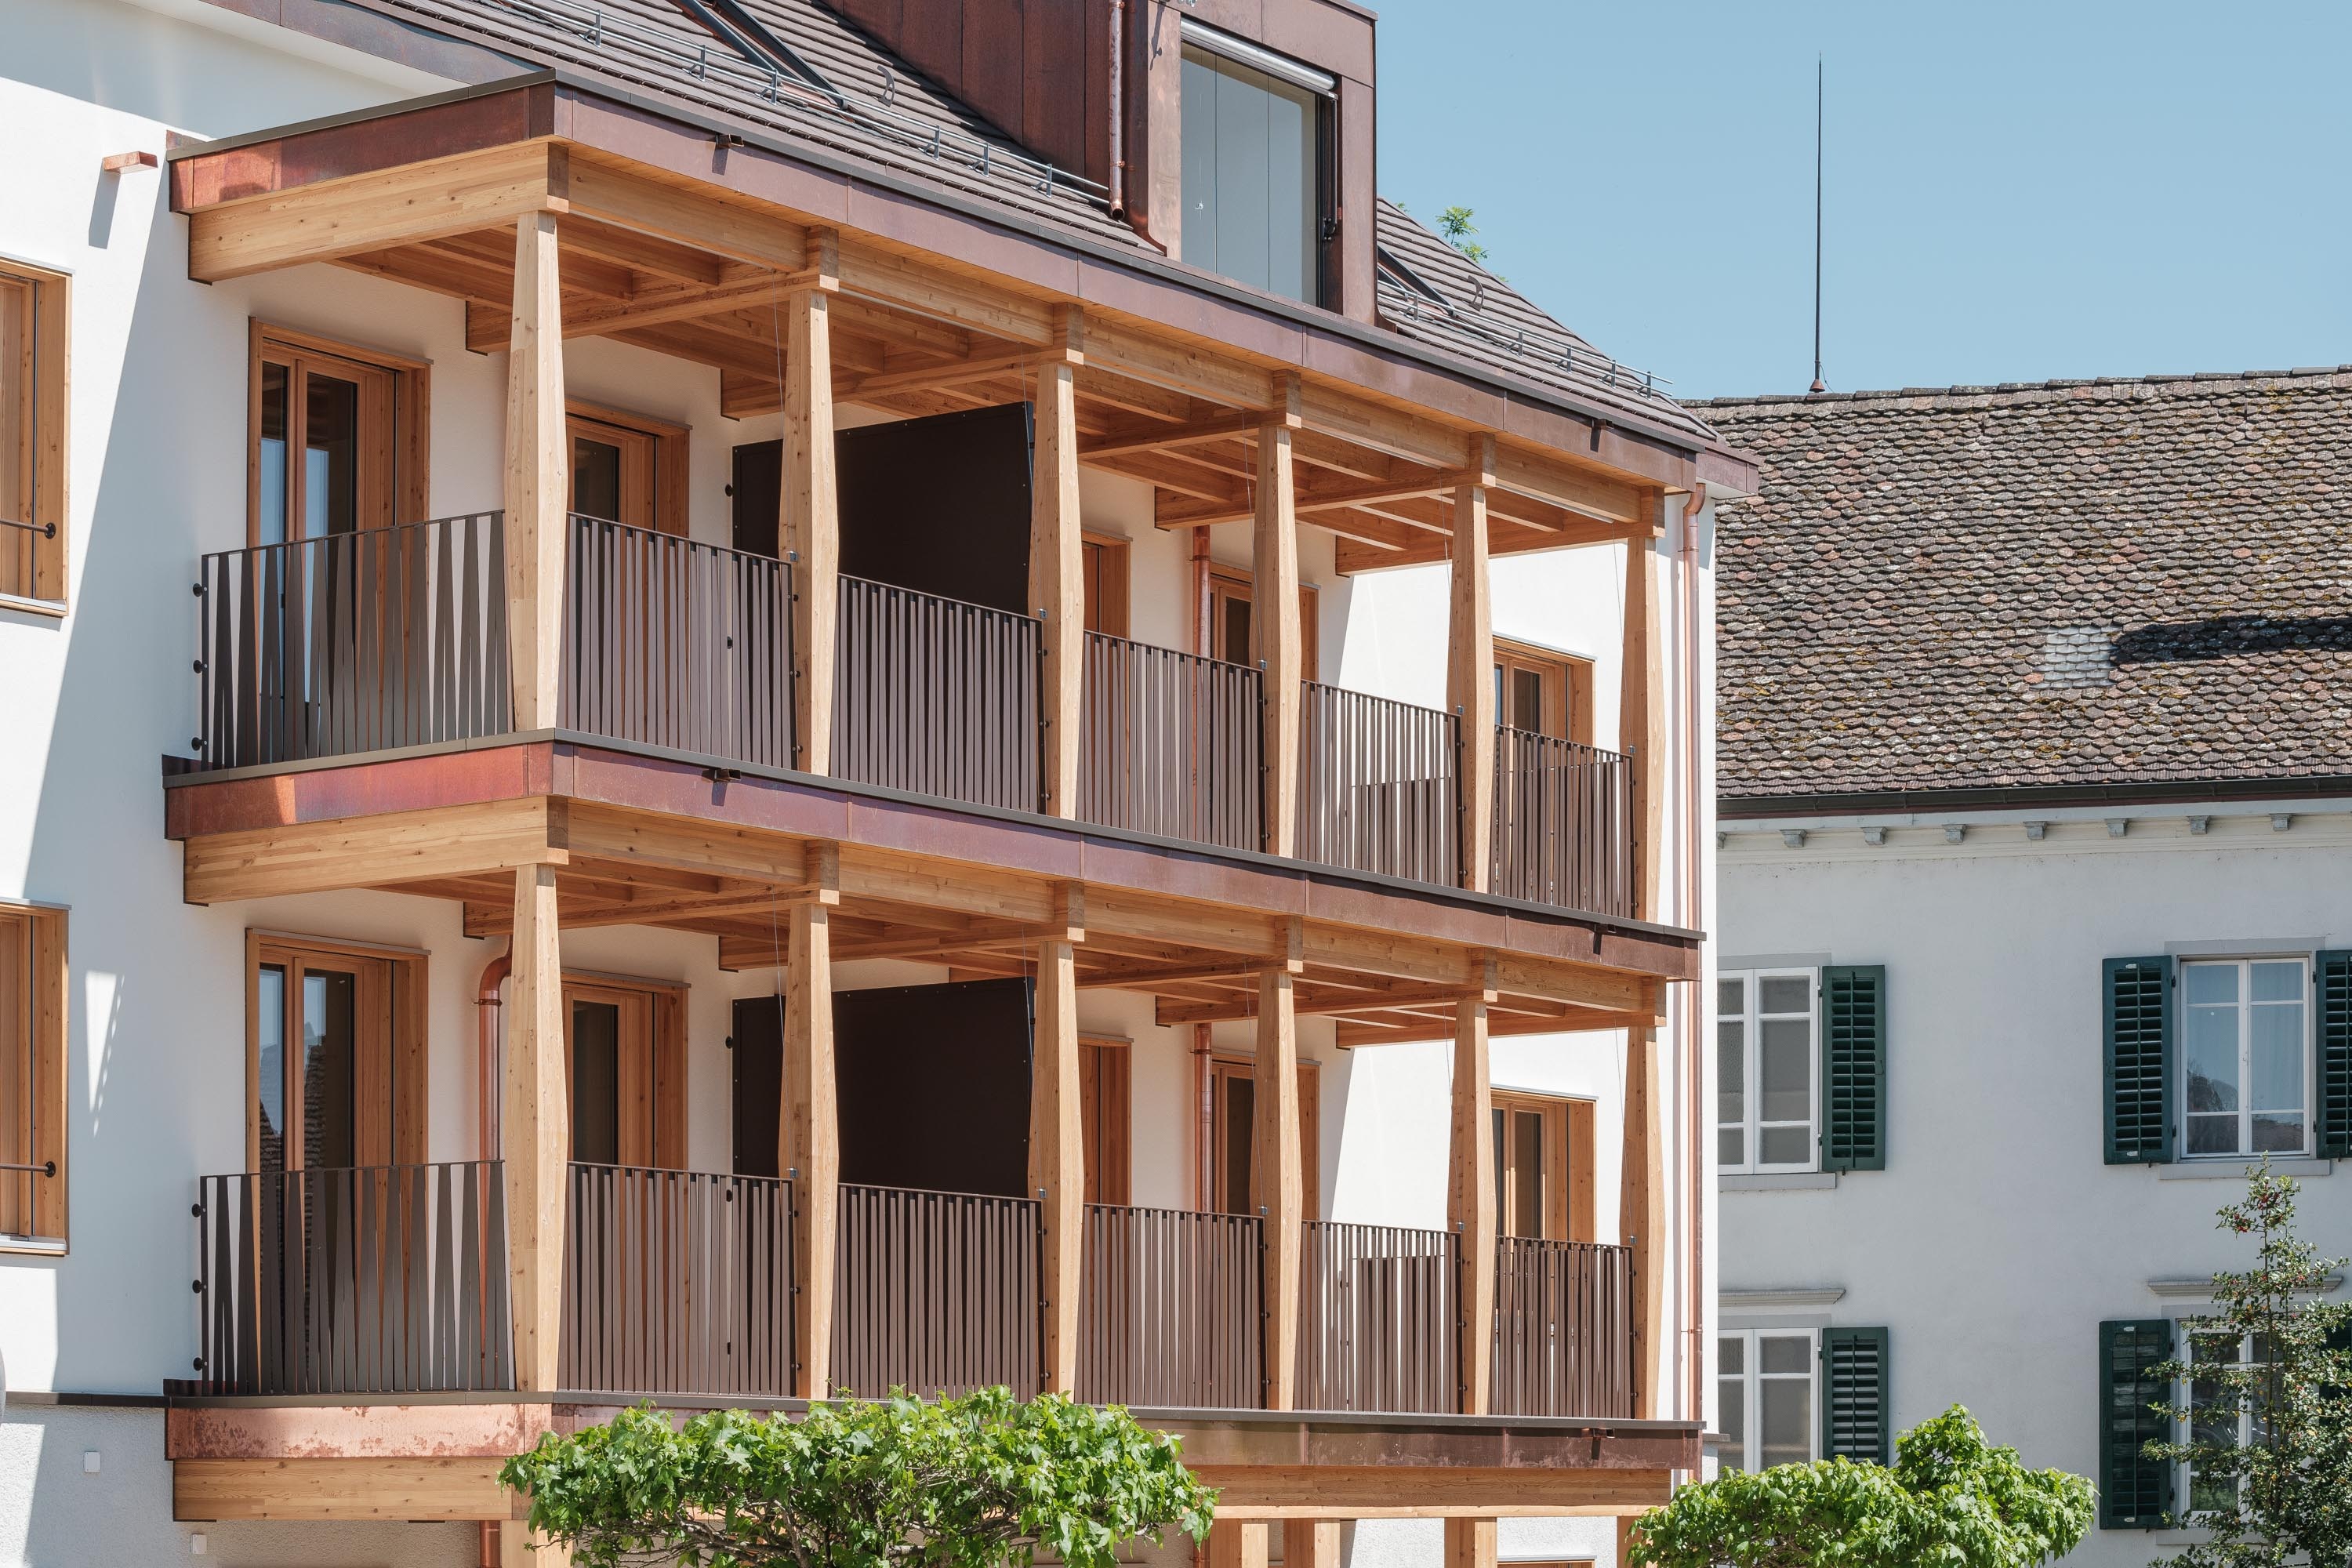 Gebäudefront mit markanter Balkonkonstruktion aus Holz und Lukarne im Dach.